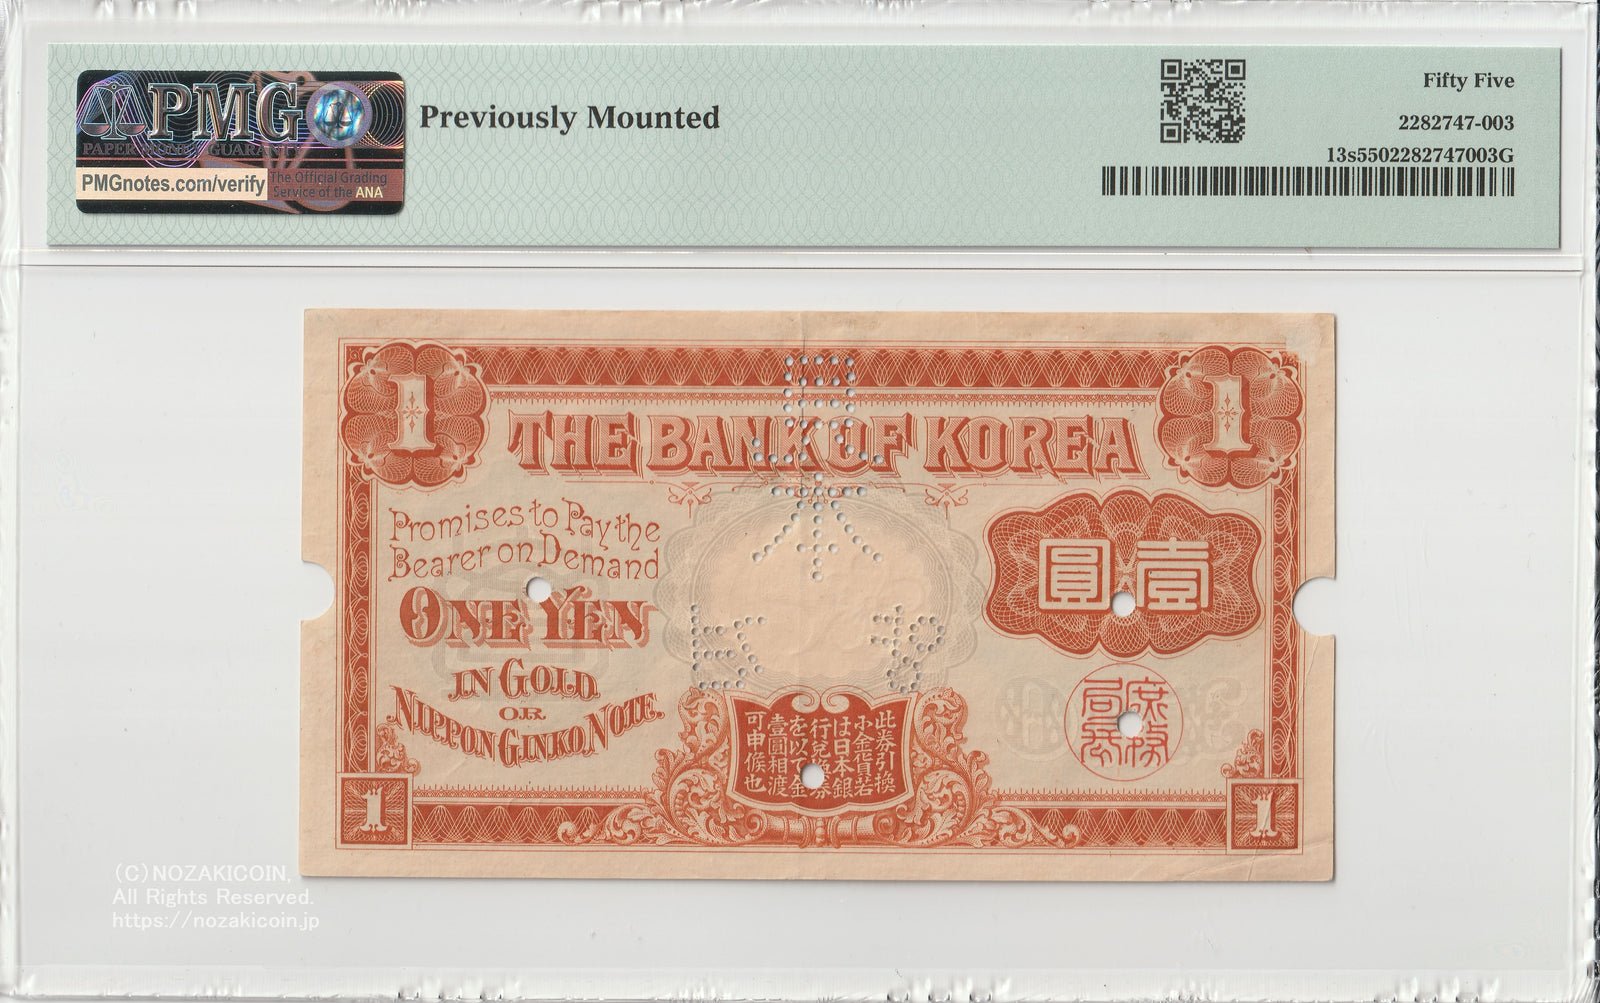 韓国銀行 1円 明治43年(1910年) 見本券 PMG55 – 野崎コイン